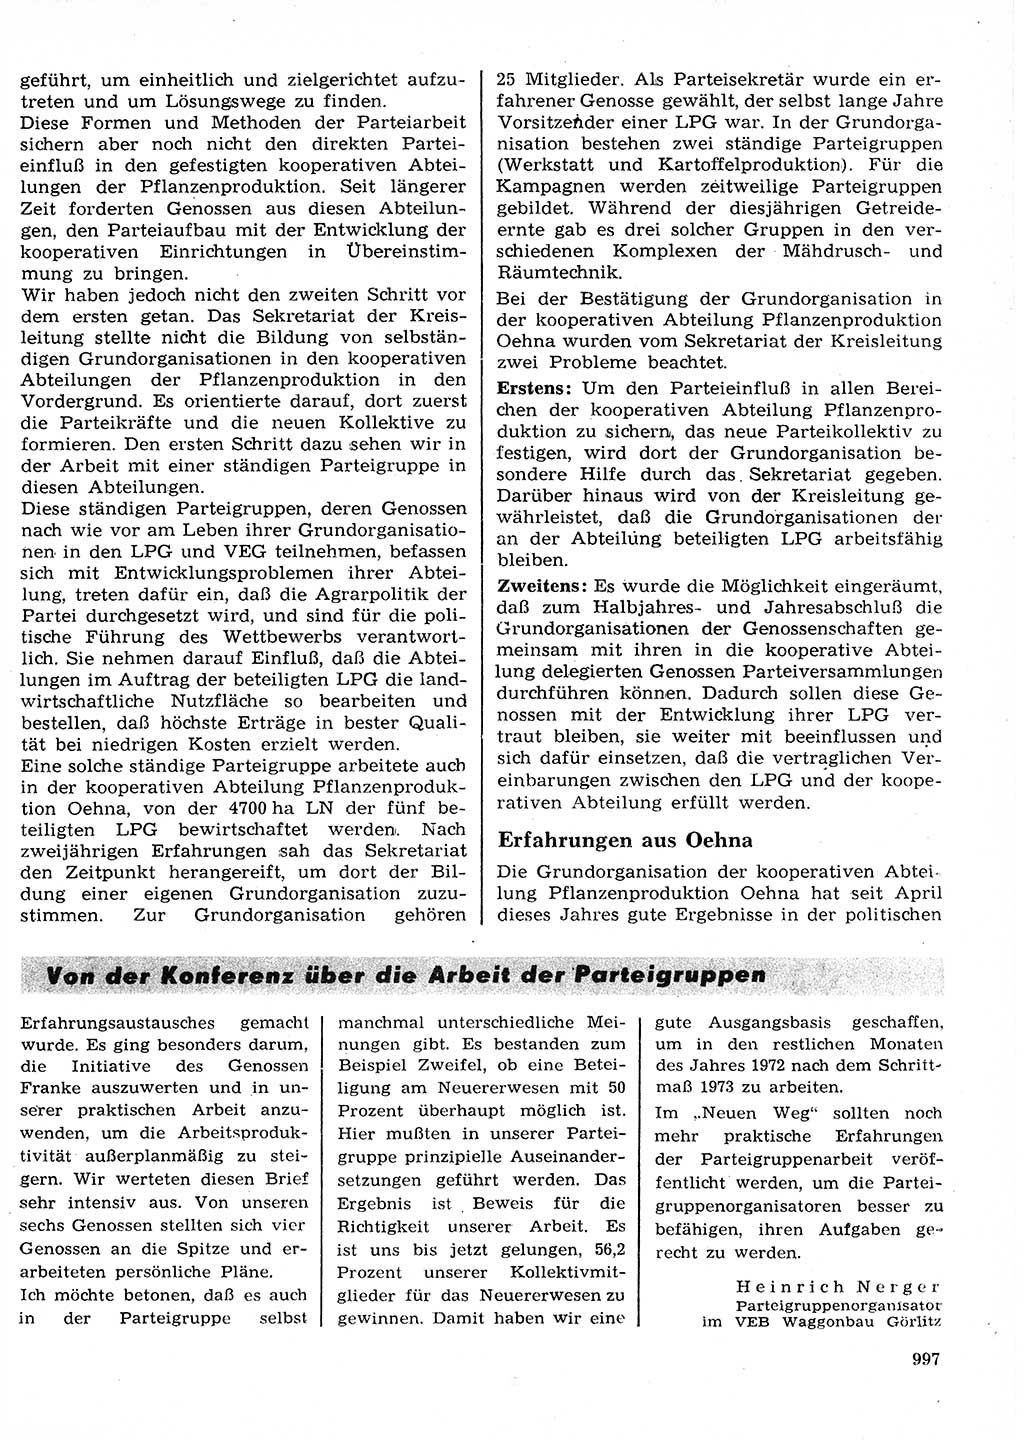 Neuer Weg (NW), Organ des Zentralkomitees (ZK) der SED (Sozialistische Einheitspartei Deutschlands) für Fragen des Parteilebens, 27. Jahrgang [Deutsche Demokratische Republik (DDR)] 1972, Seite 997 (NW ZK SED DDR 1972, S. 997)